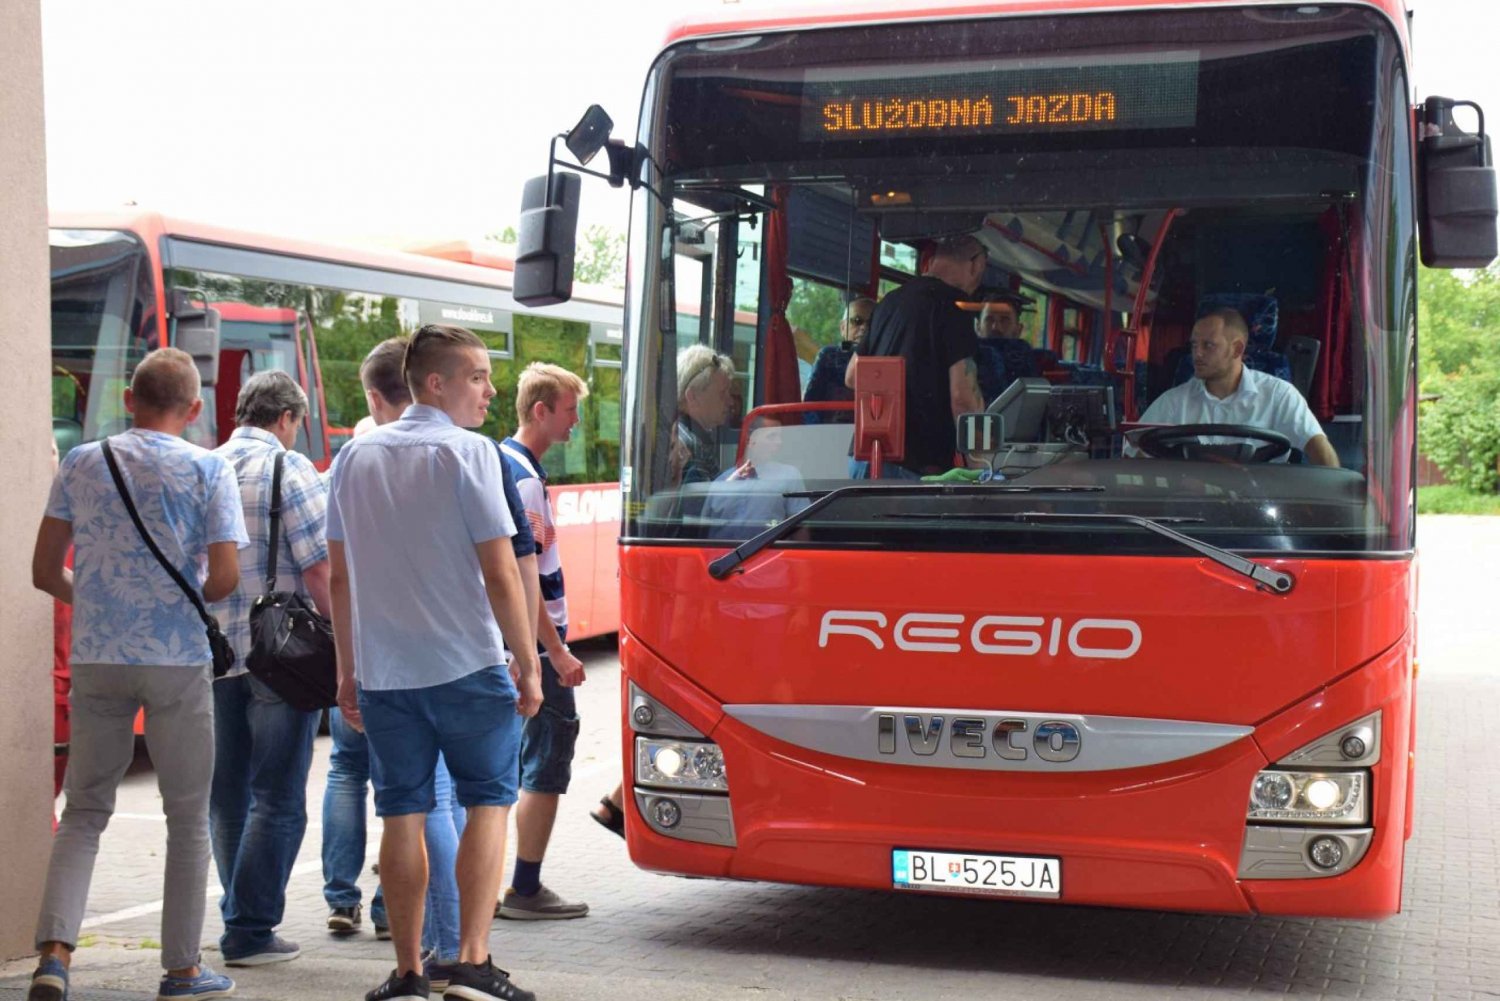 Bratislava: Busstransfer till/från Wien